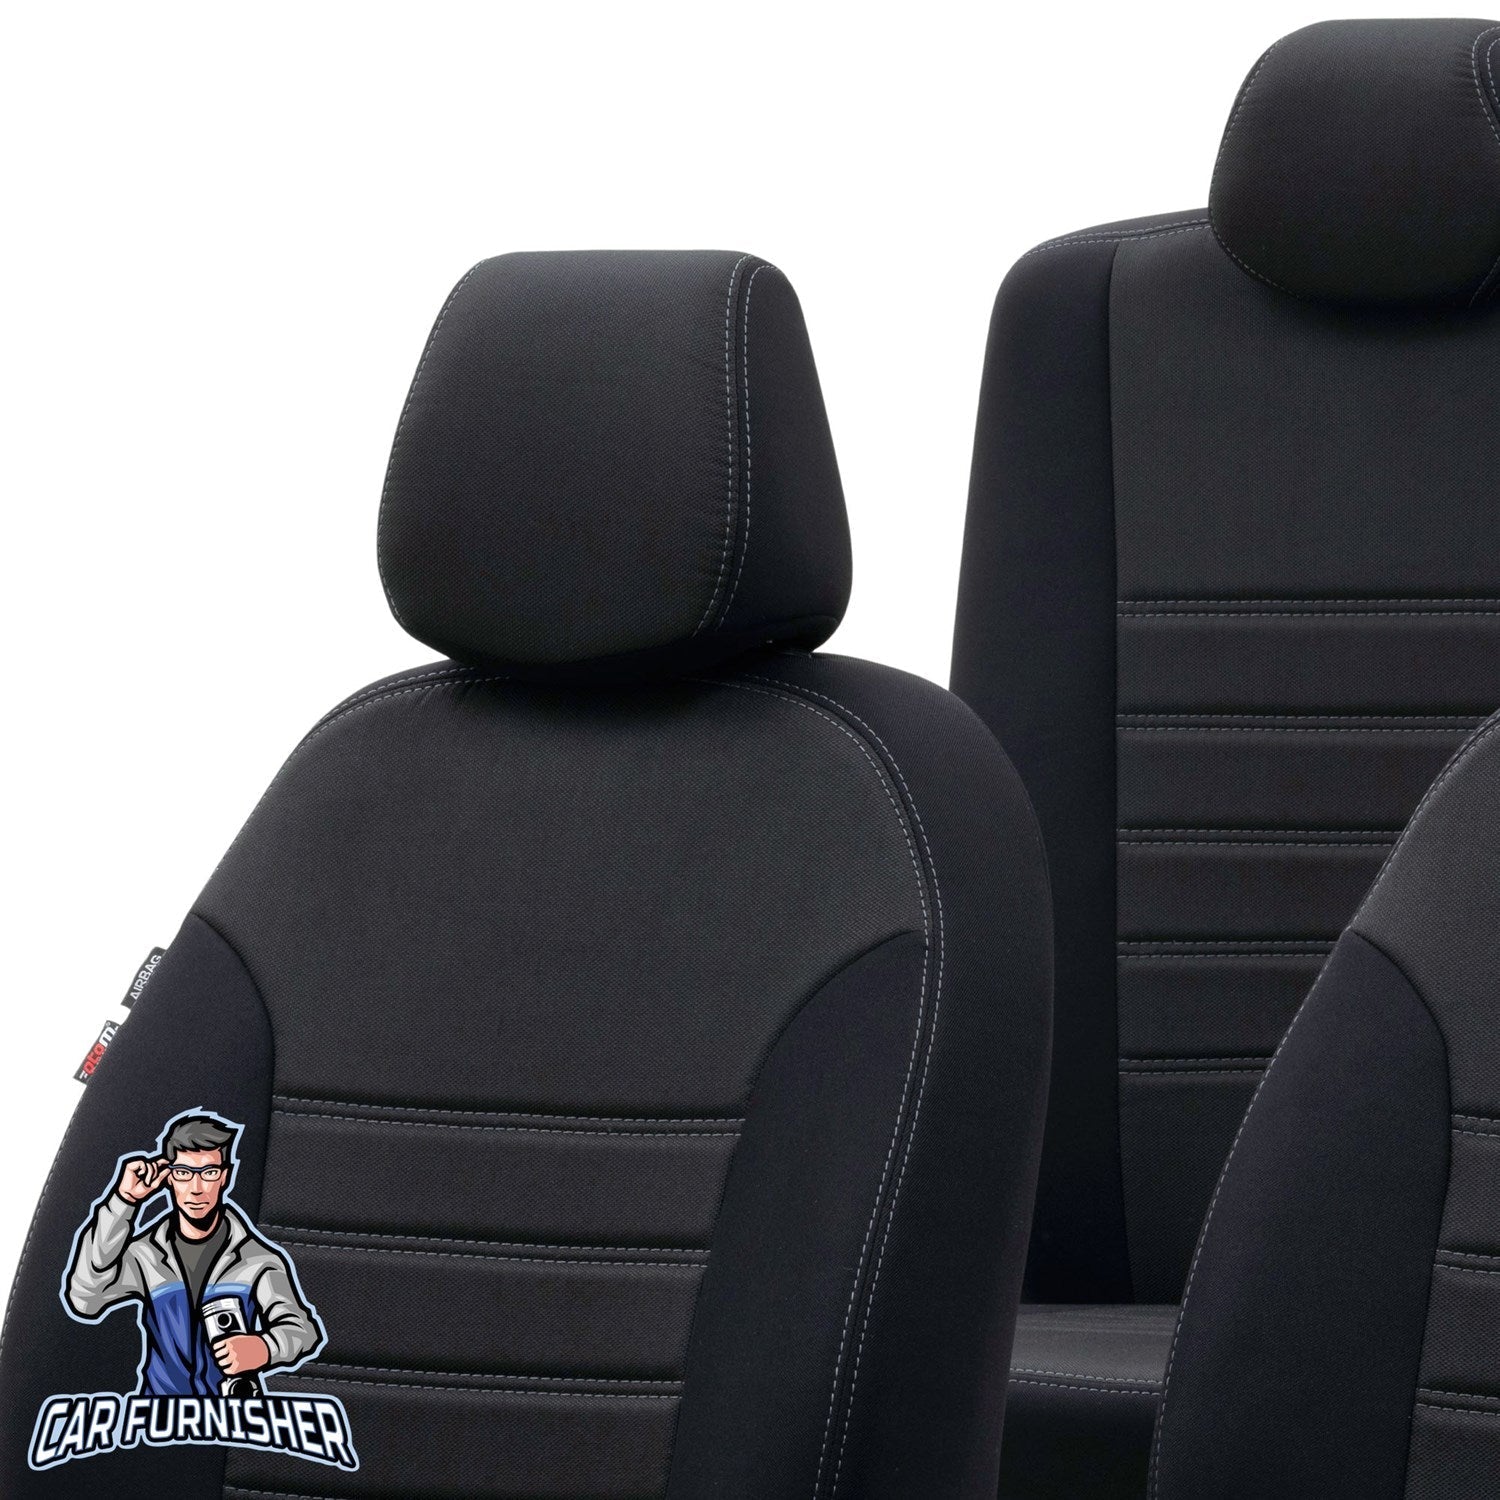 Kia Carens Seat Cover Original Jacquard Design Black Jacquard Fabric